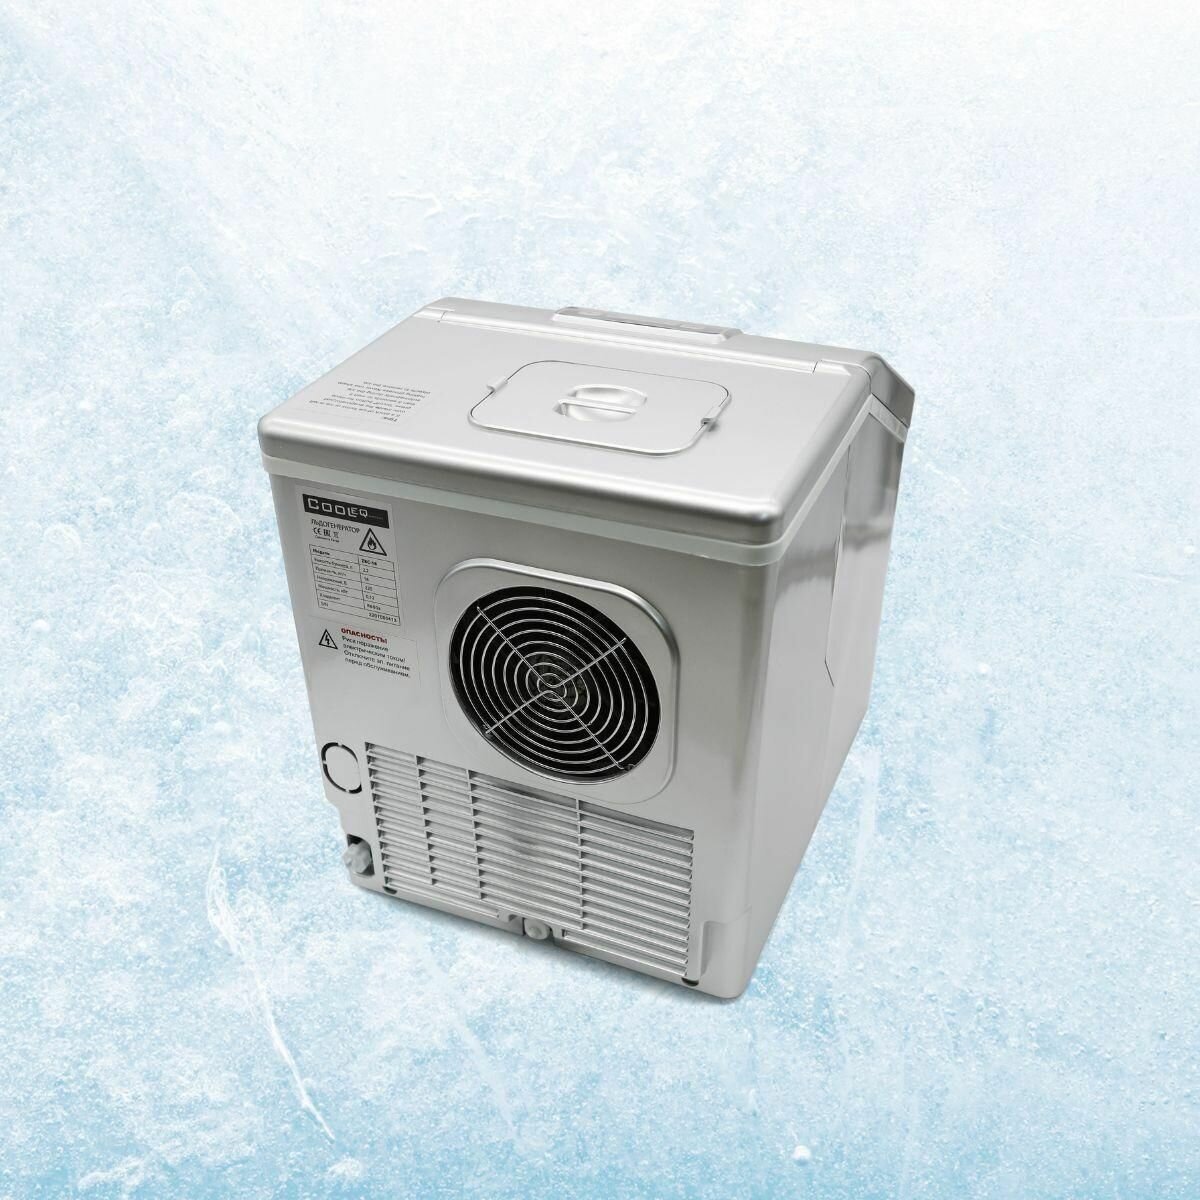 Льдогенератор для дома COOLEQ ZBC-18 кубики. Ледогенератор заливной. Генератор льда для кафе, бара, дома